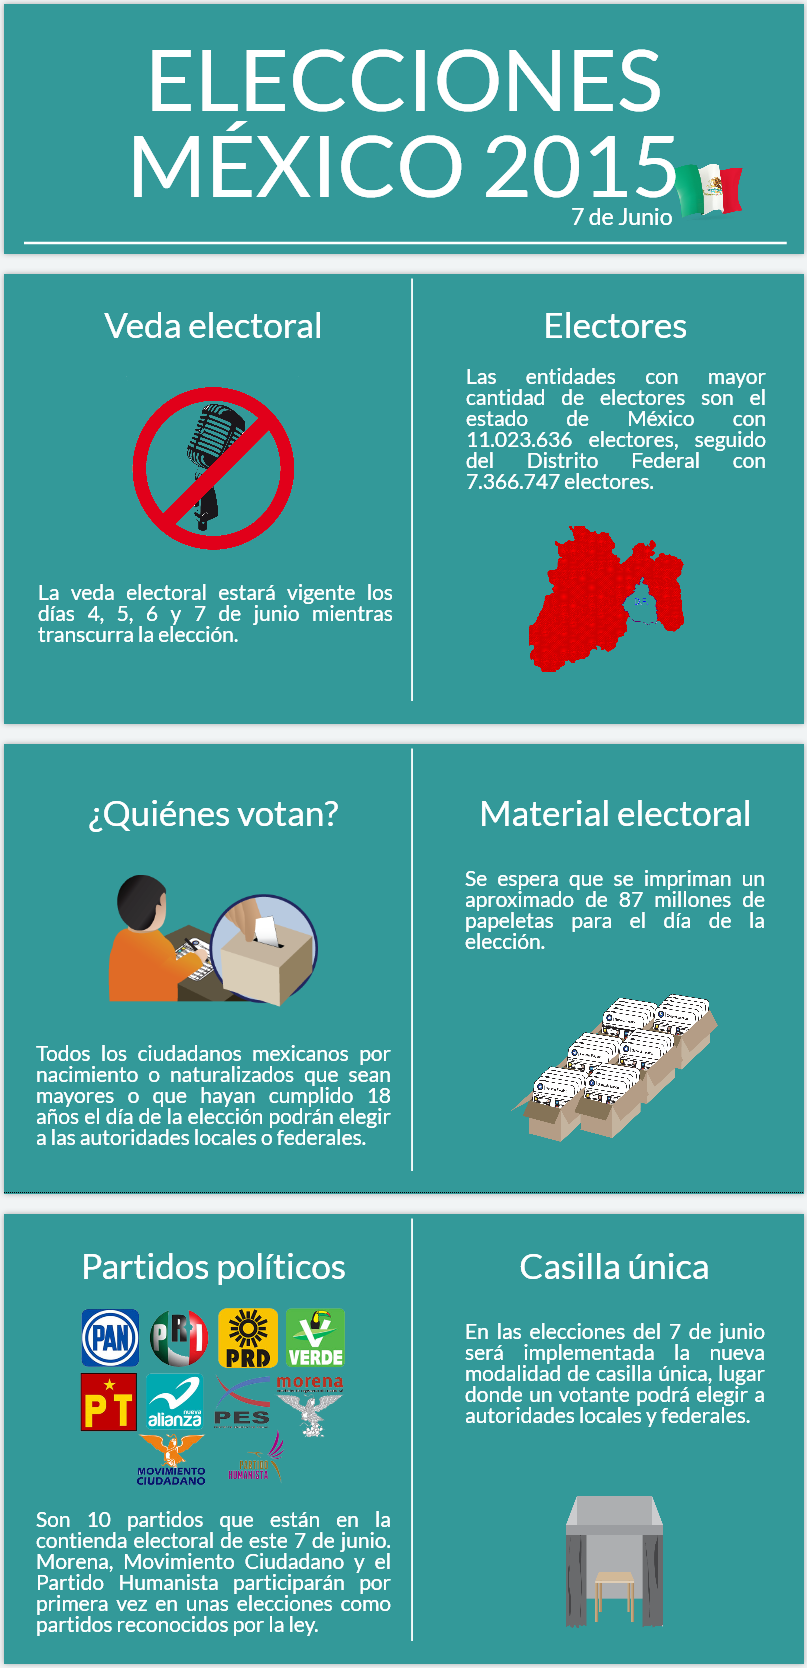 Mexico elecciones